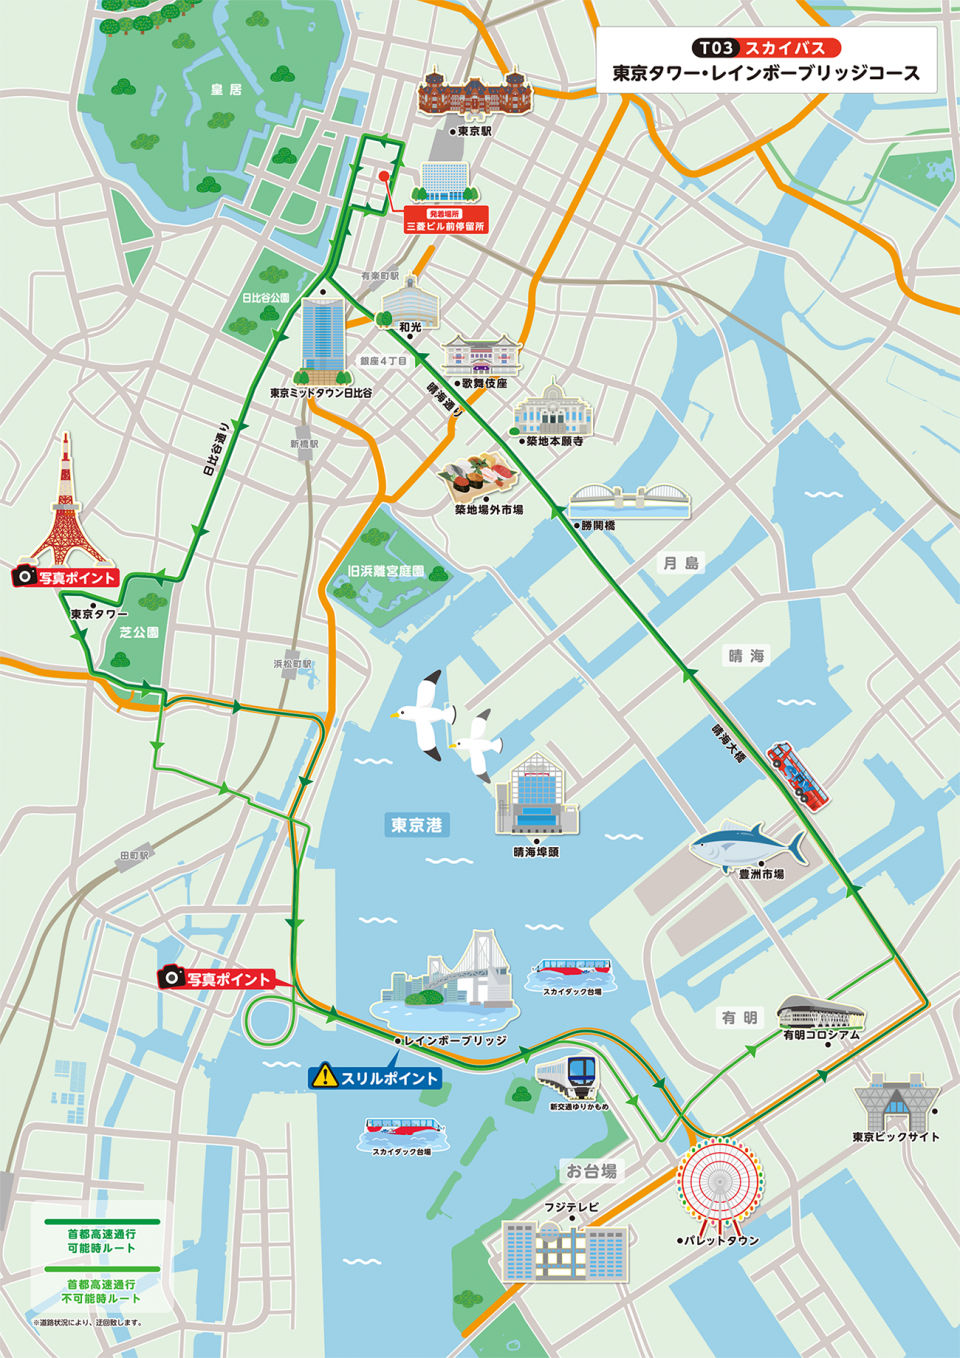 スカイバス 東京タワー レインボーブリッジコース Sky Bus スカイバス コース情報